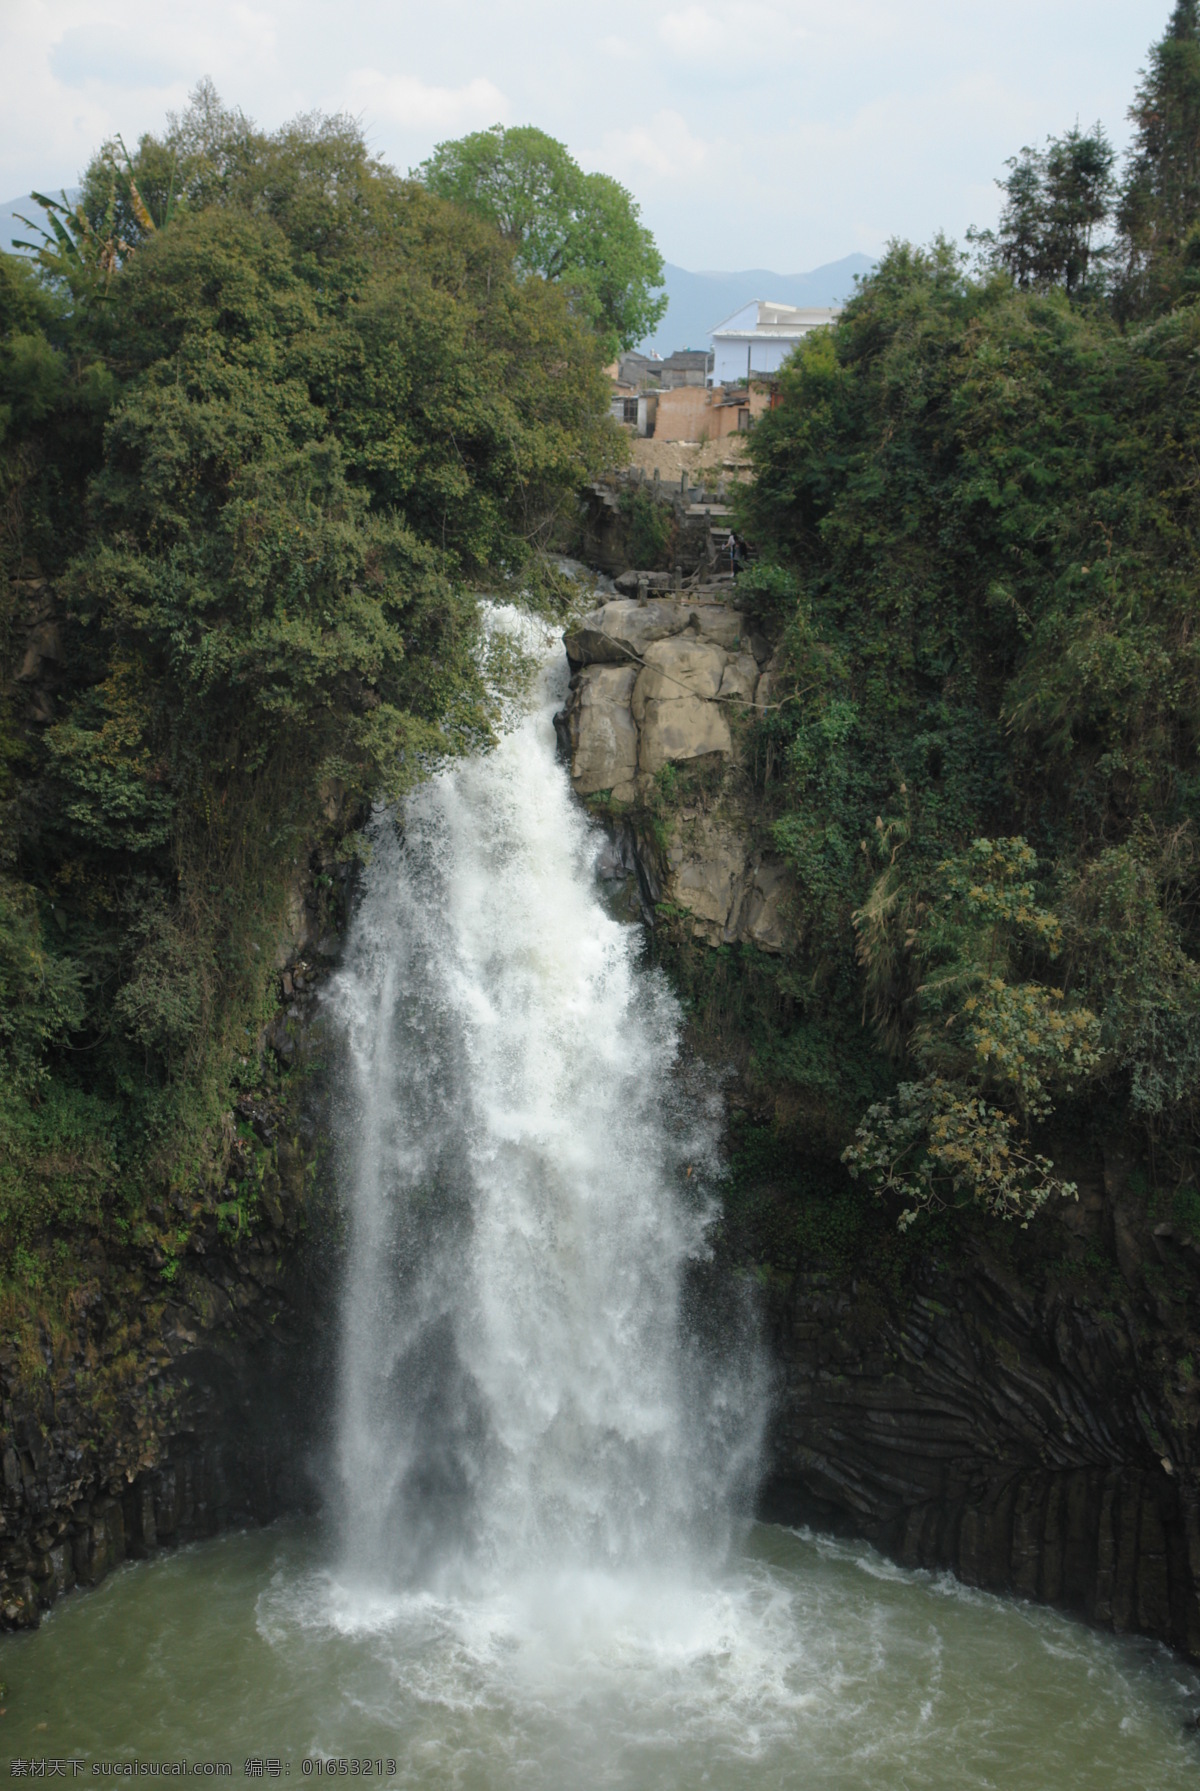 叠水河瀑布 叠水河 瀑布 腾冲 山峰 树木 河流 旅游摄影 自然风景 摄影图库 腾冲风光